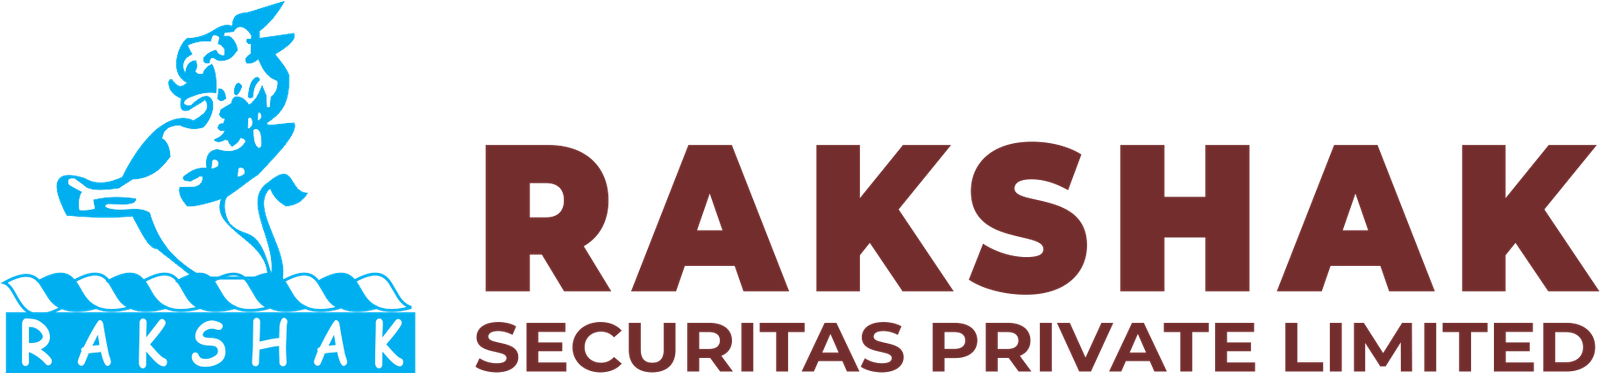 Rakshak Securitas logo